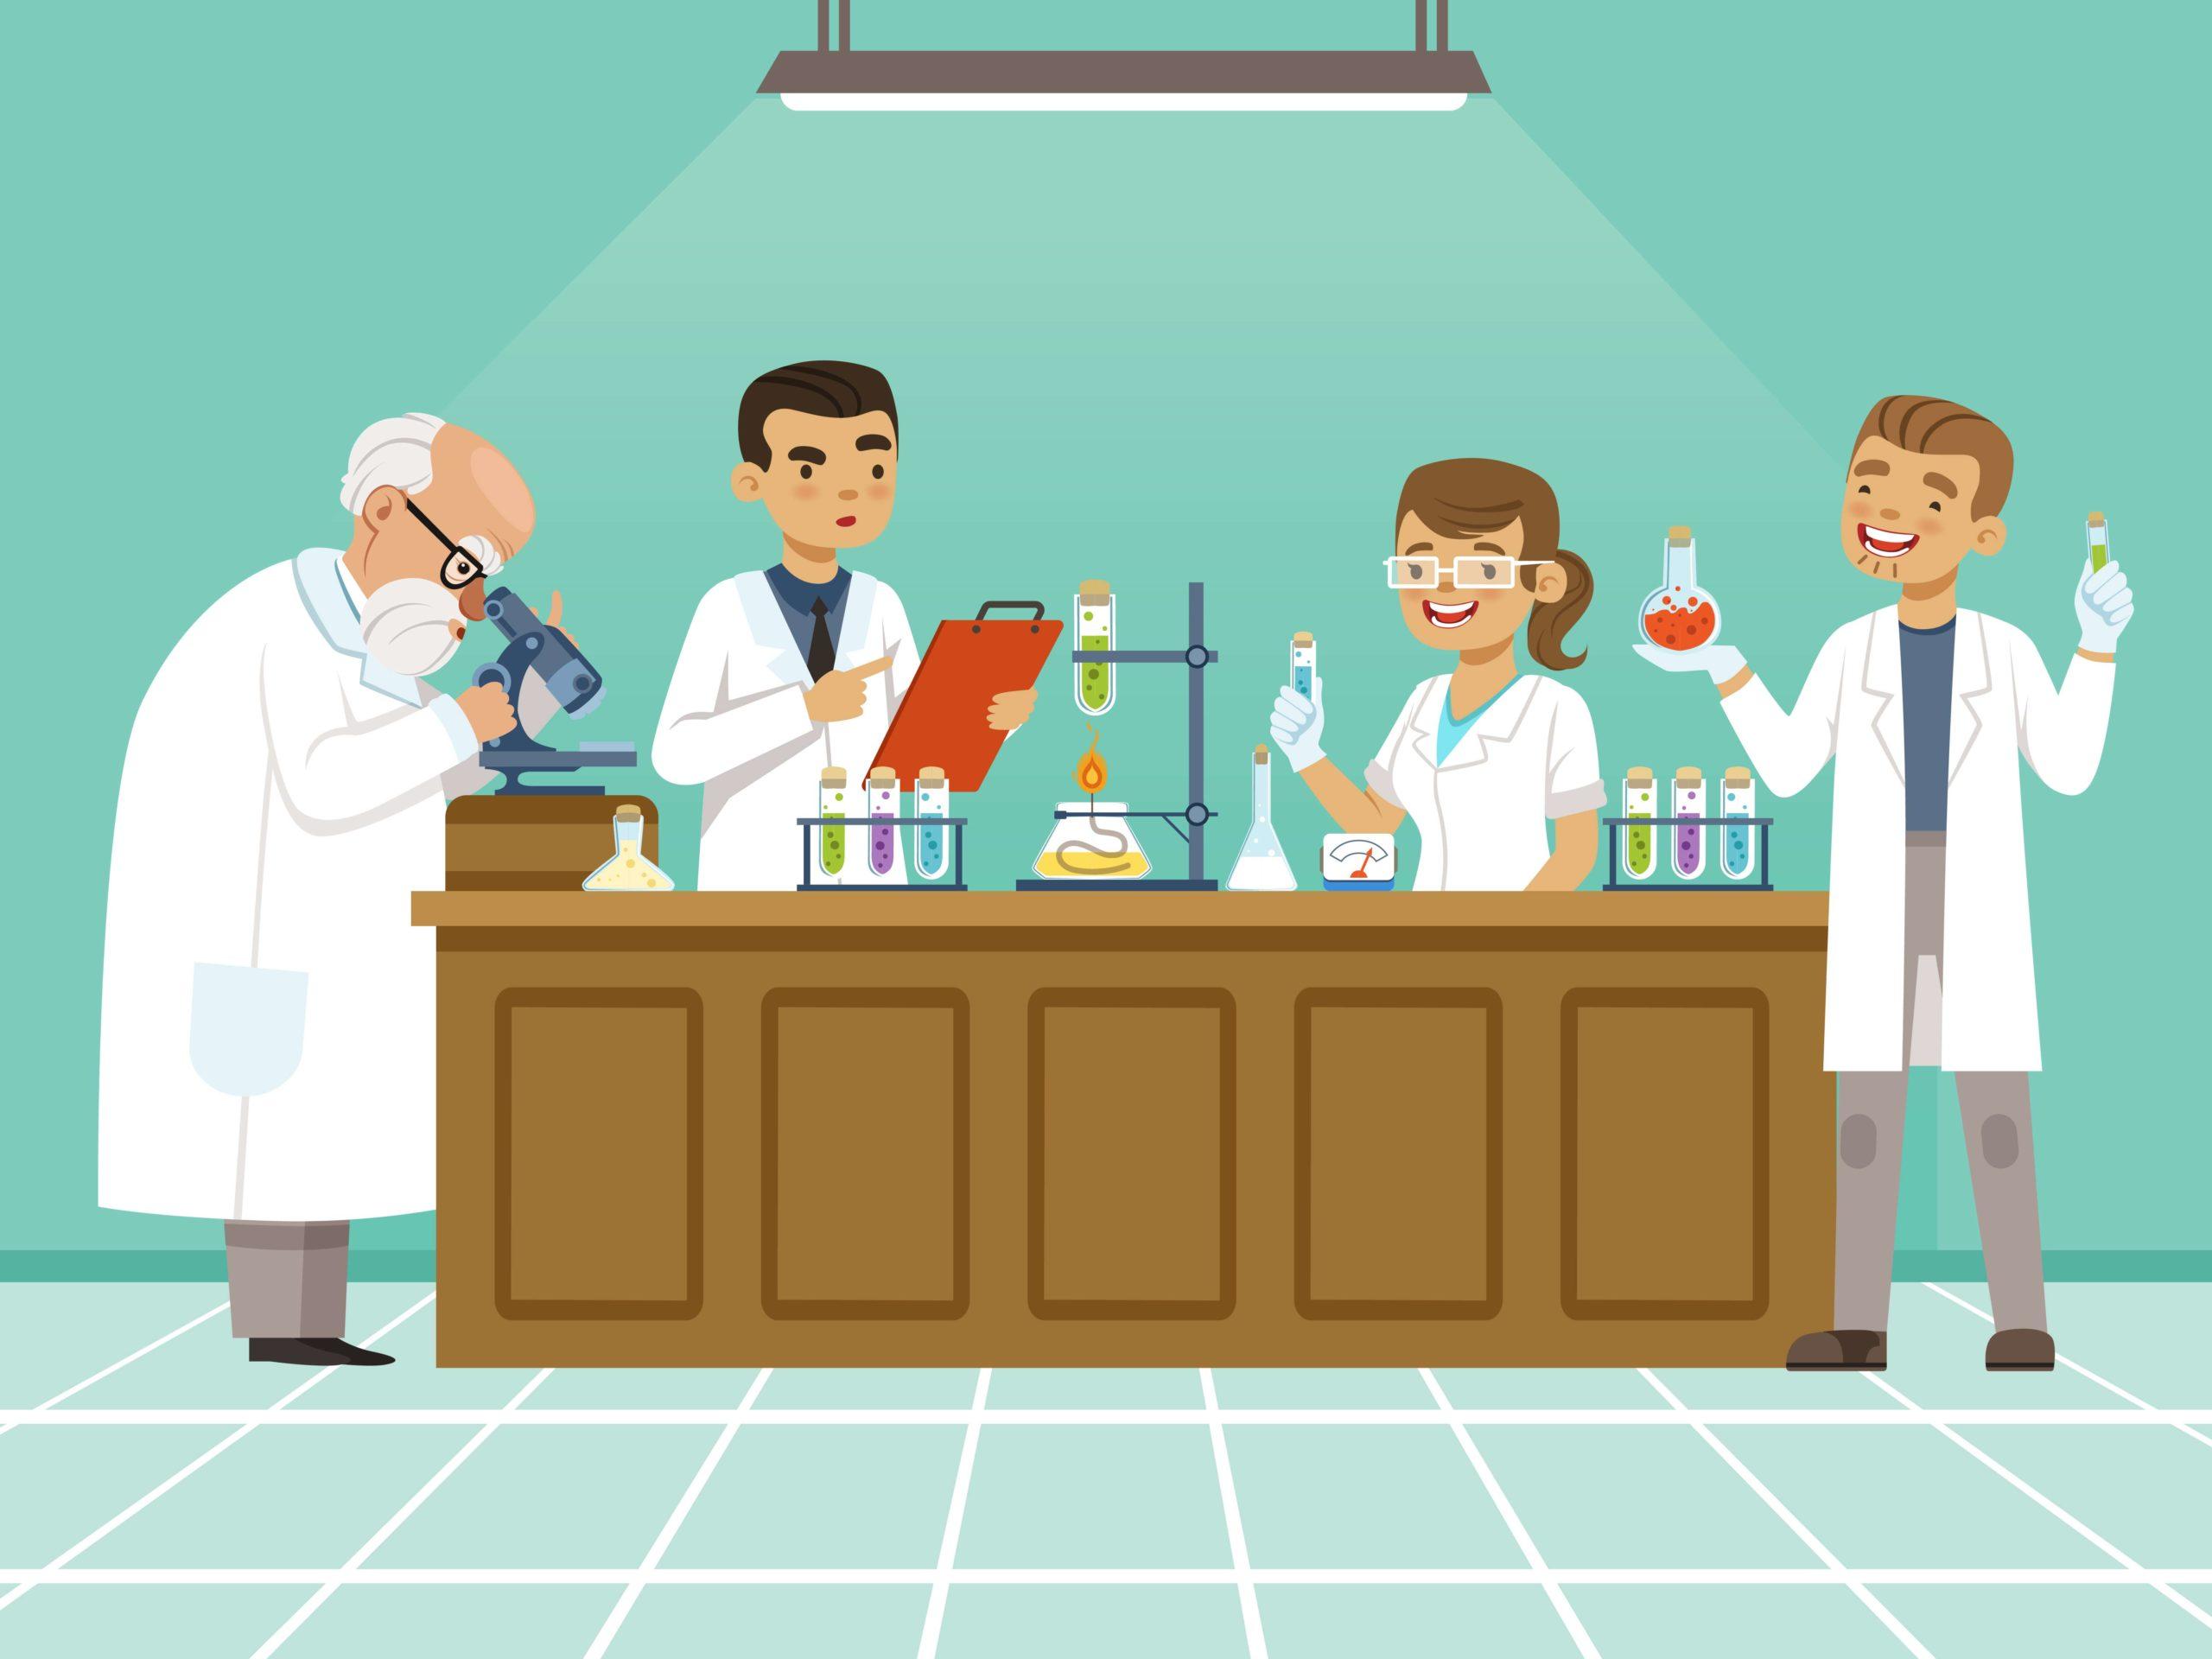 Professionelle Chemiker machen in ihrem Labor verschiedene Experimente auf dem Tisch. Männliche und weibliche medizinische Fachkräfte